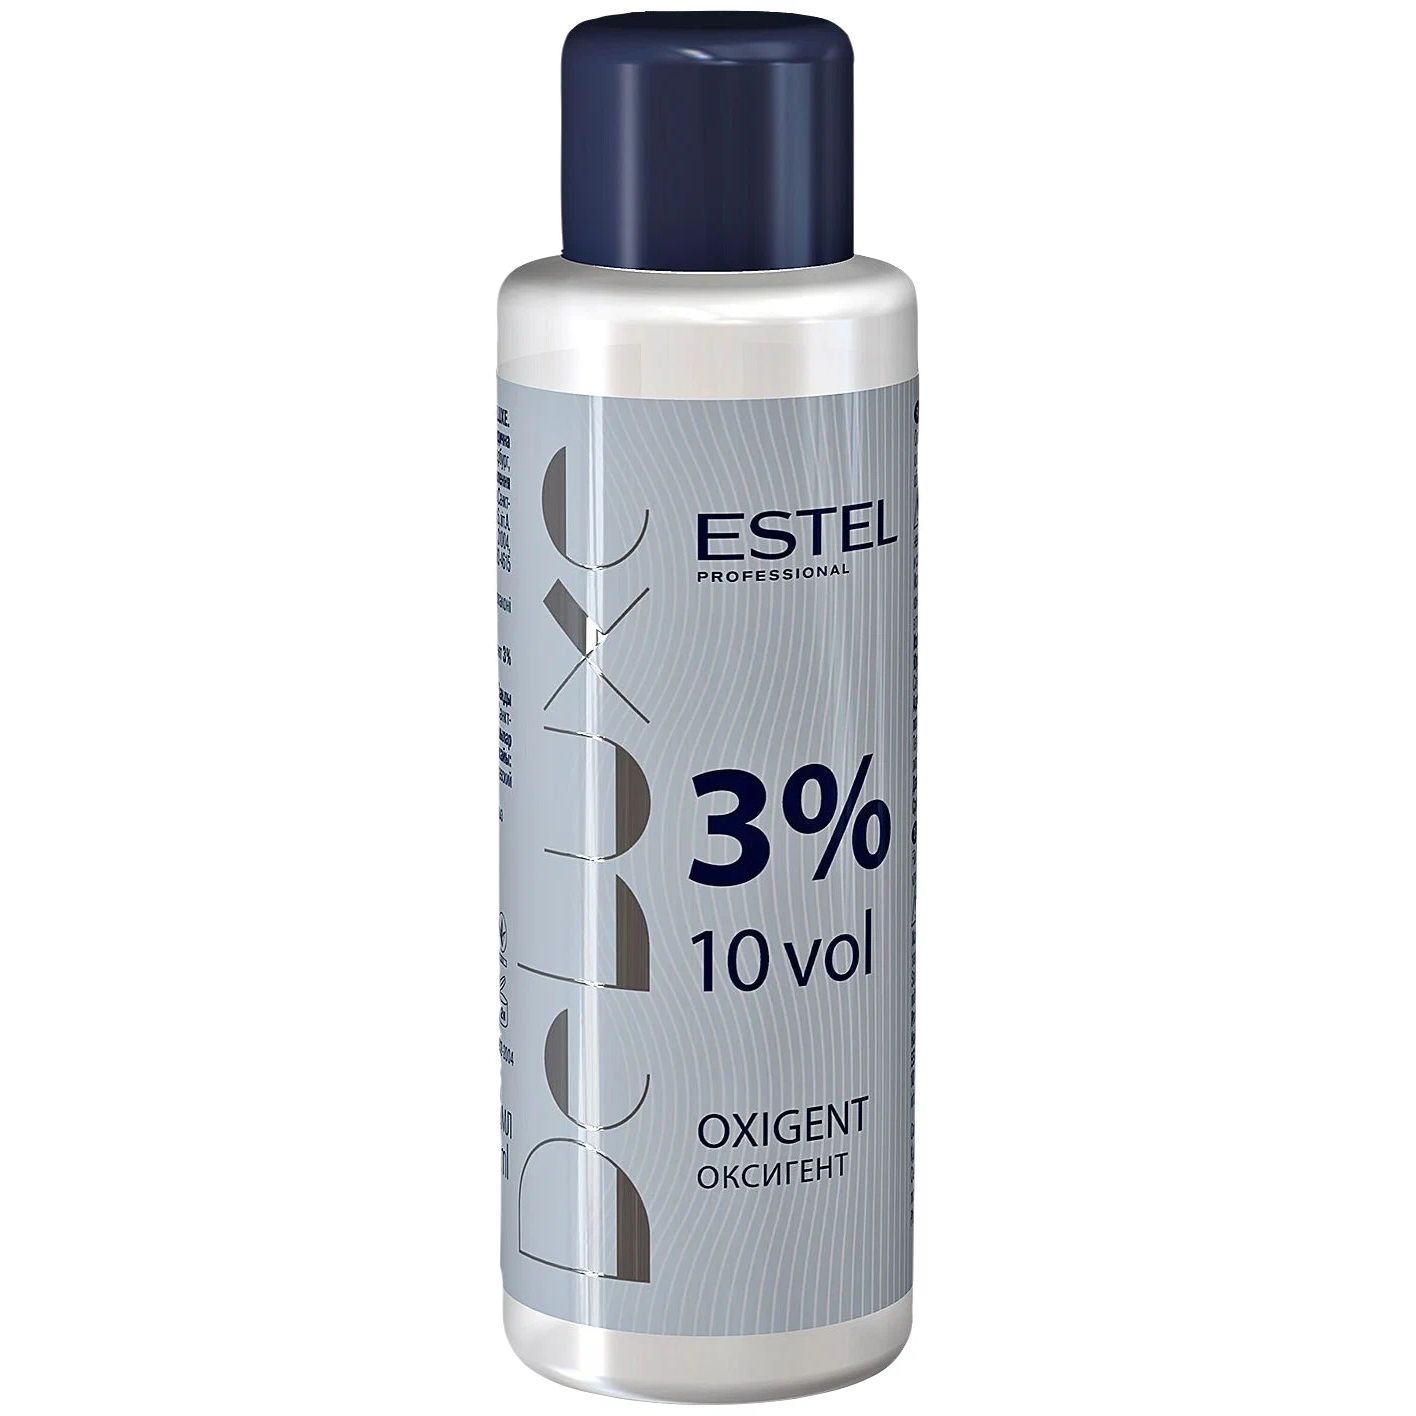 Проявитель Estel Professional De Luxe Oxigent 3% 60 мл проявитель estel professional de luxe oxigent 12% 900 мл